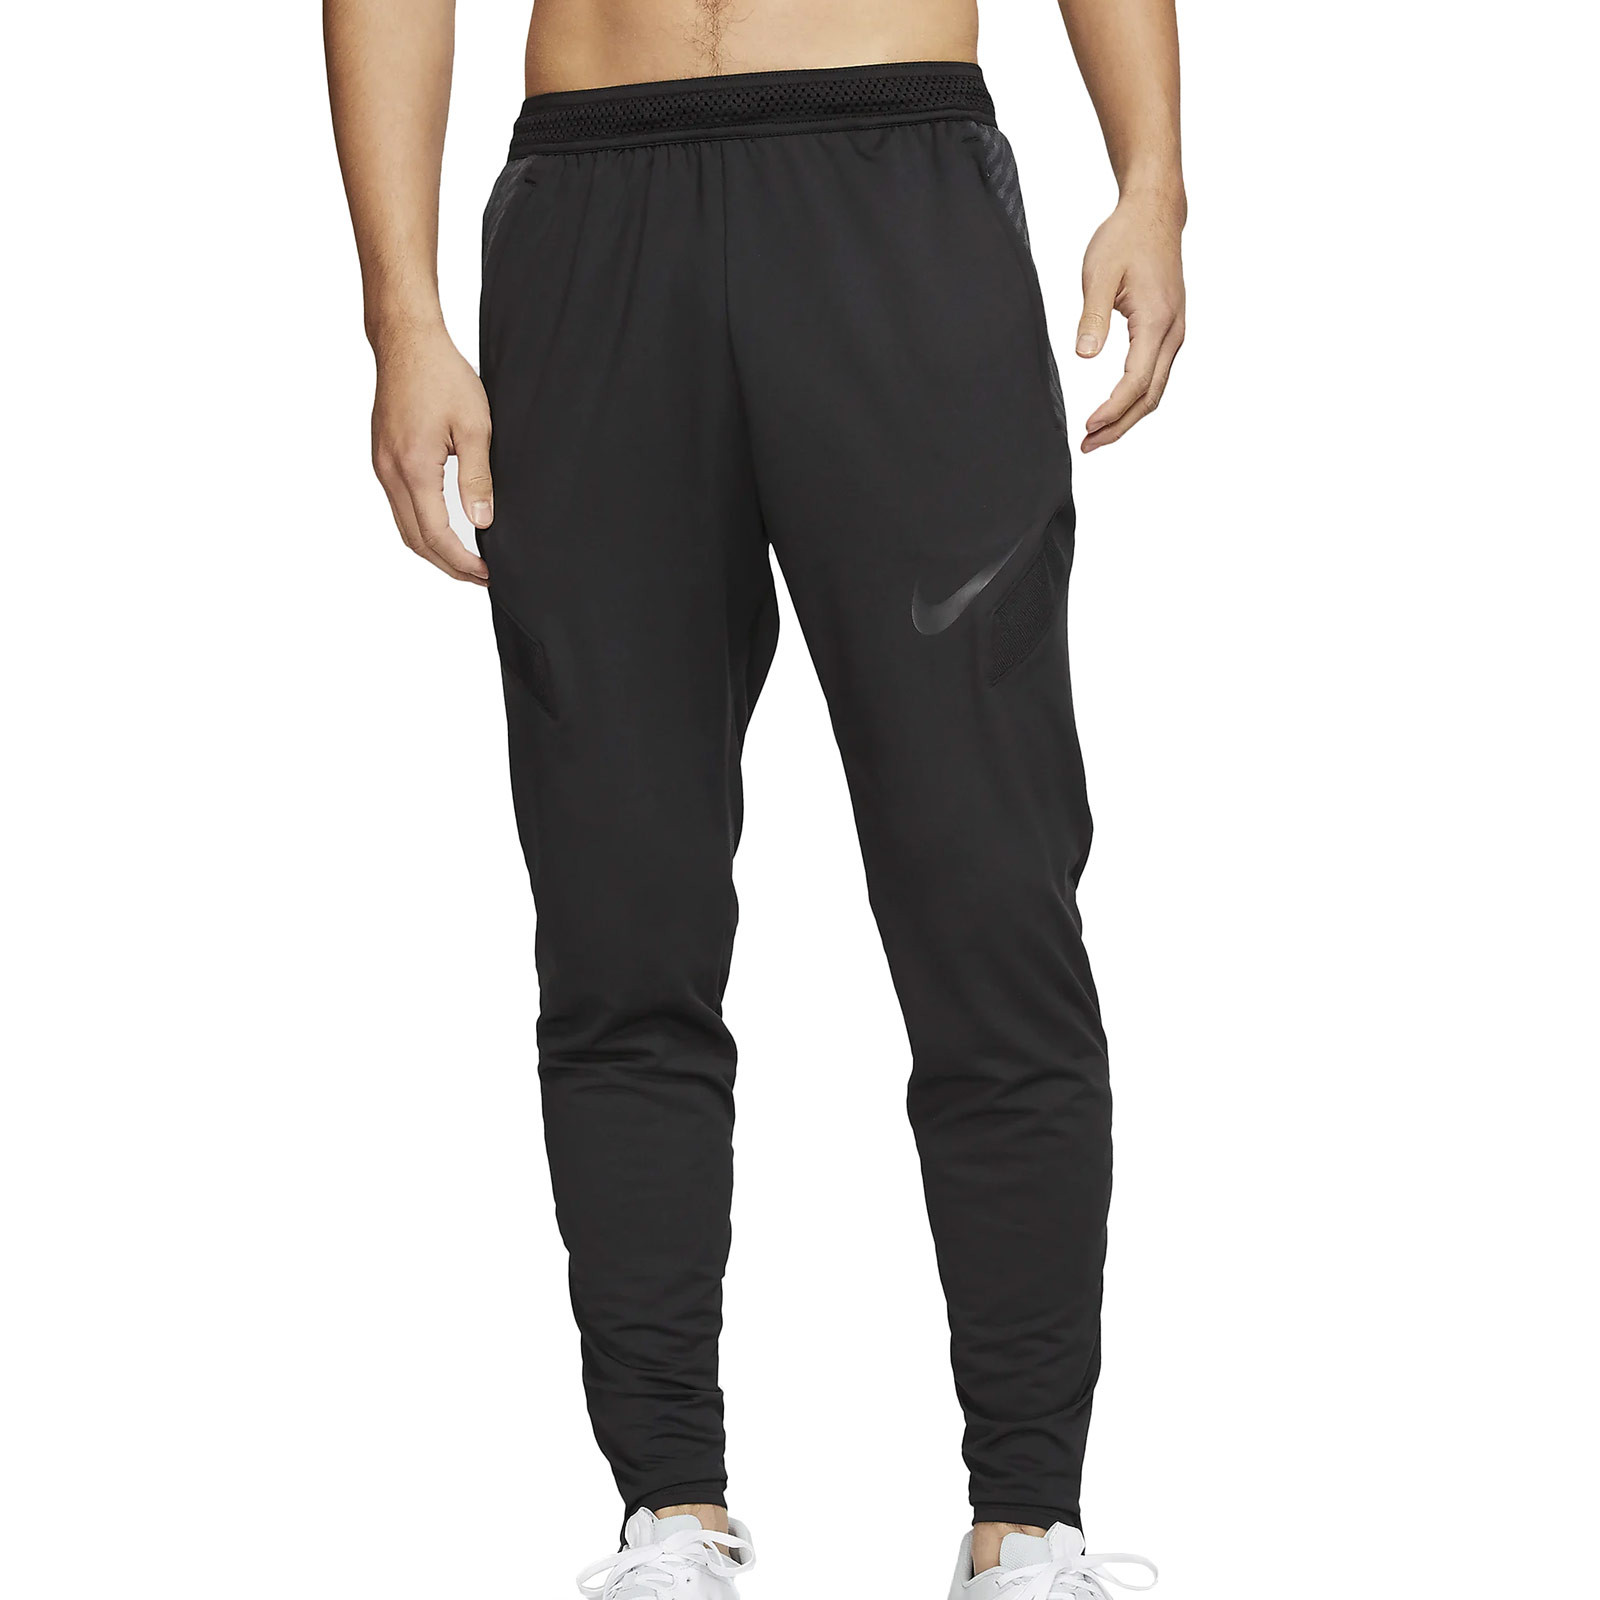 Pantalón Nike Dry Strike negro futbolmania